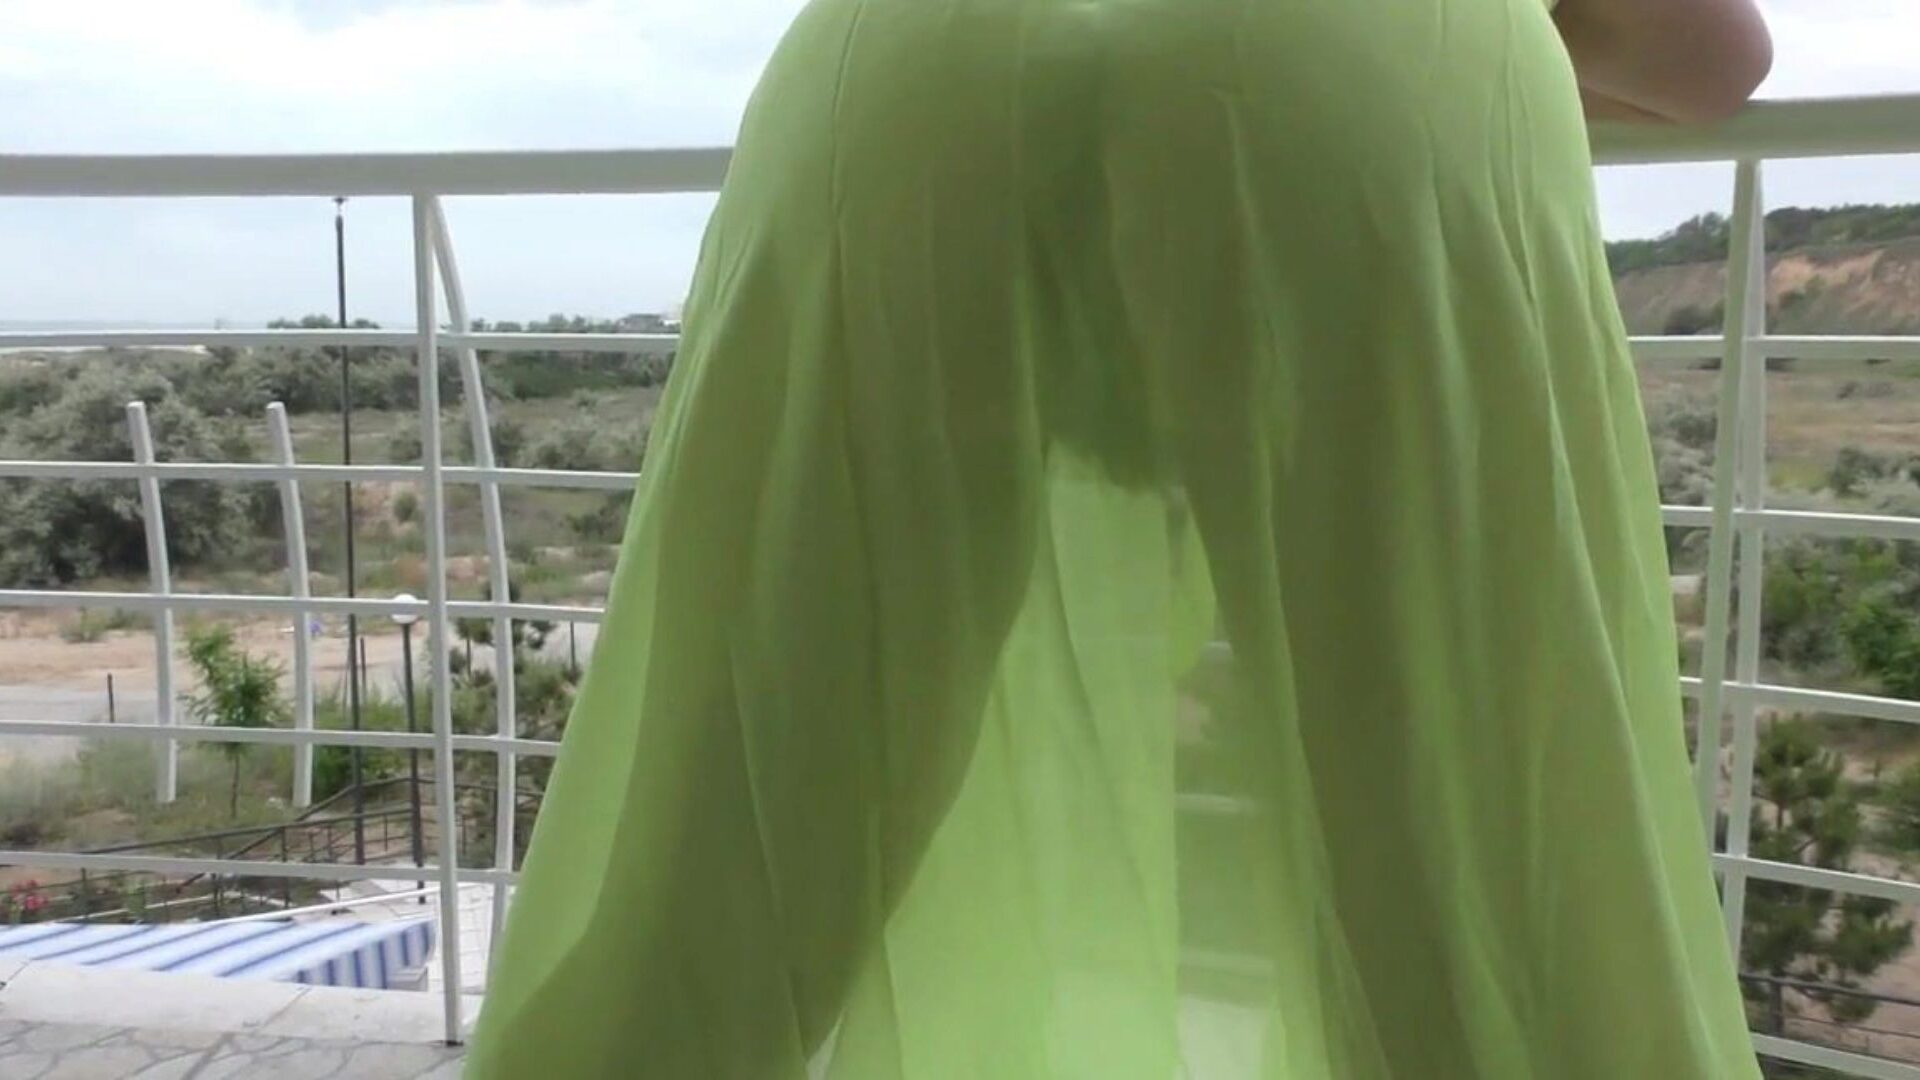 chlupatý ve věku zobrazování na balkoně chlupatý starší v průhledném obleku na balkoně